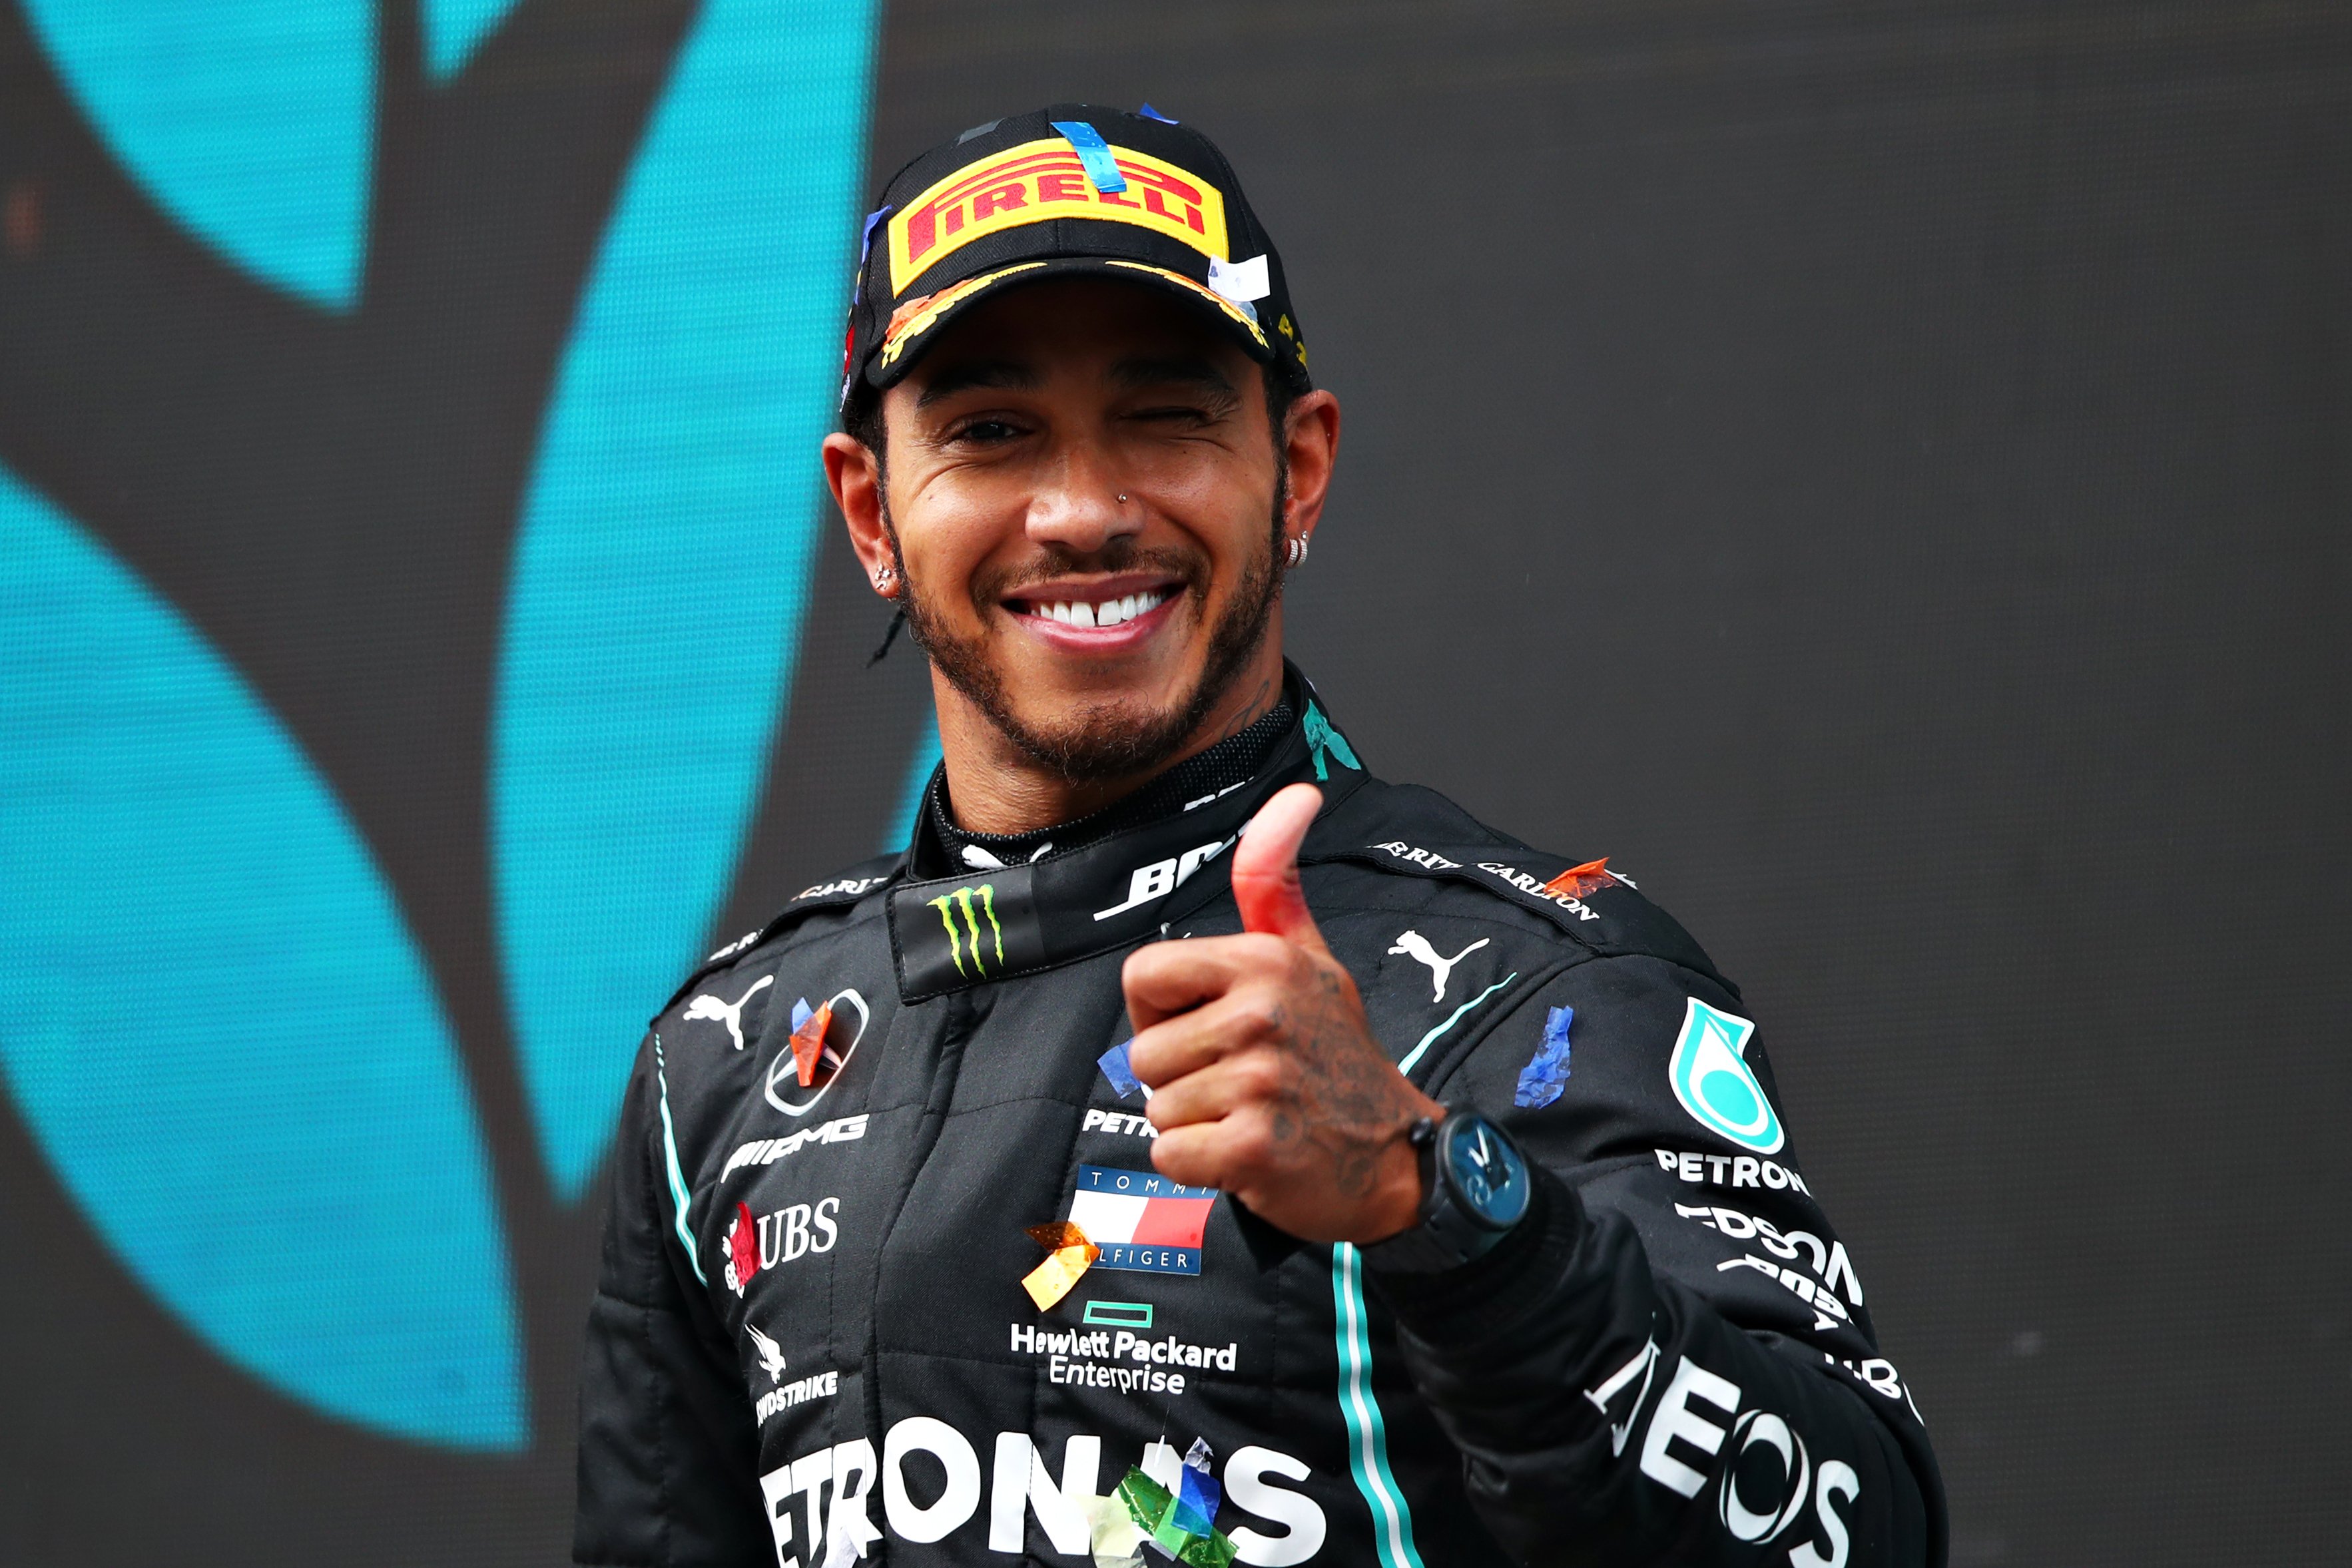 Lewis Hamilton feiert den Gewinn einer 7. F1-Fahrer-Weltmeisterschaft auf dem Podium während des F1-Grand-Prix der Türkei im Intercity Istanbul Park am 15. November 2020 in Istanbul, Türkei. | Quelle: Getty Images